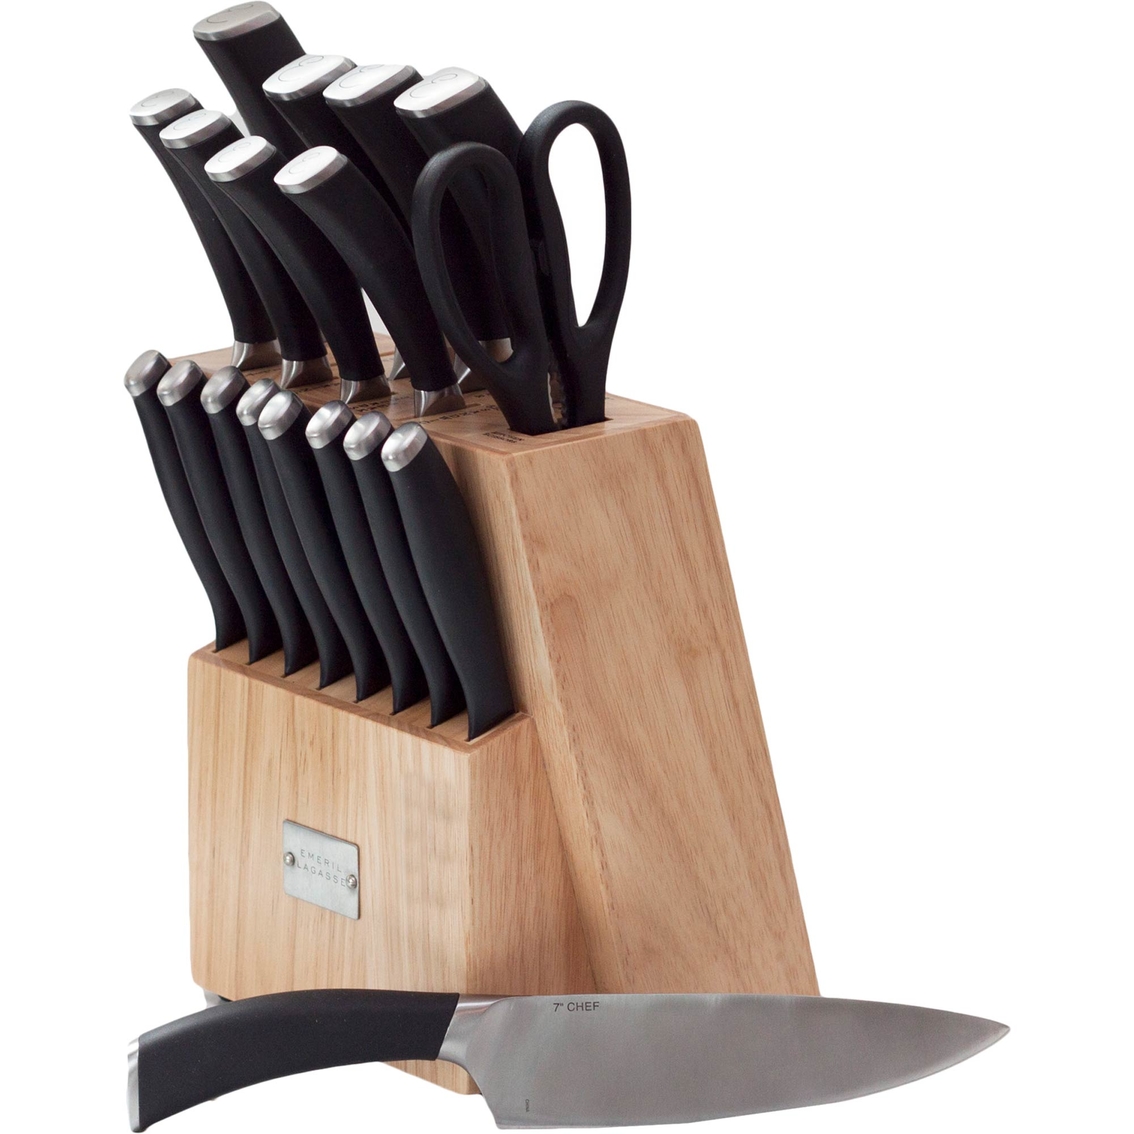 Emerilware Kitchen Knife Sets